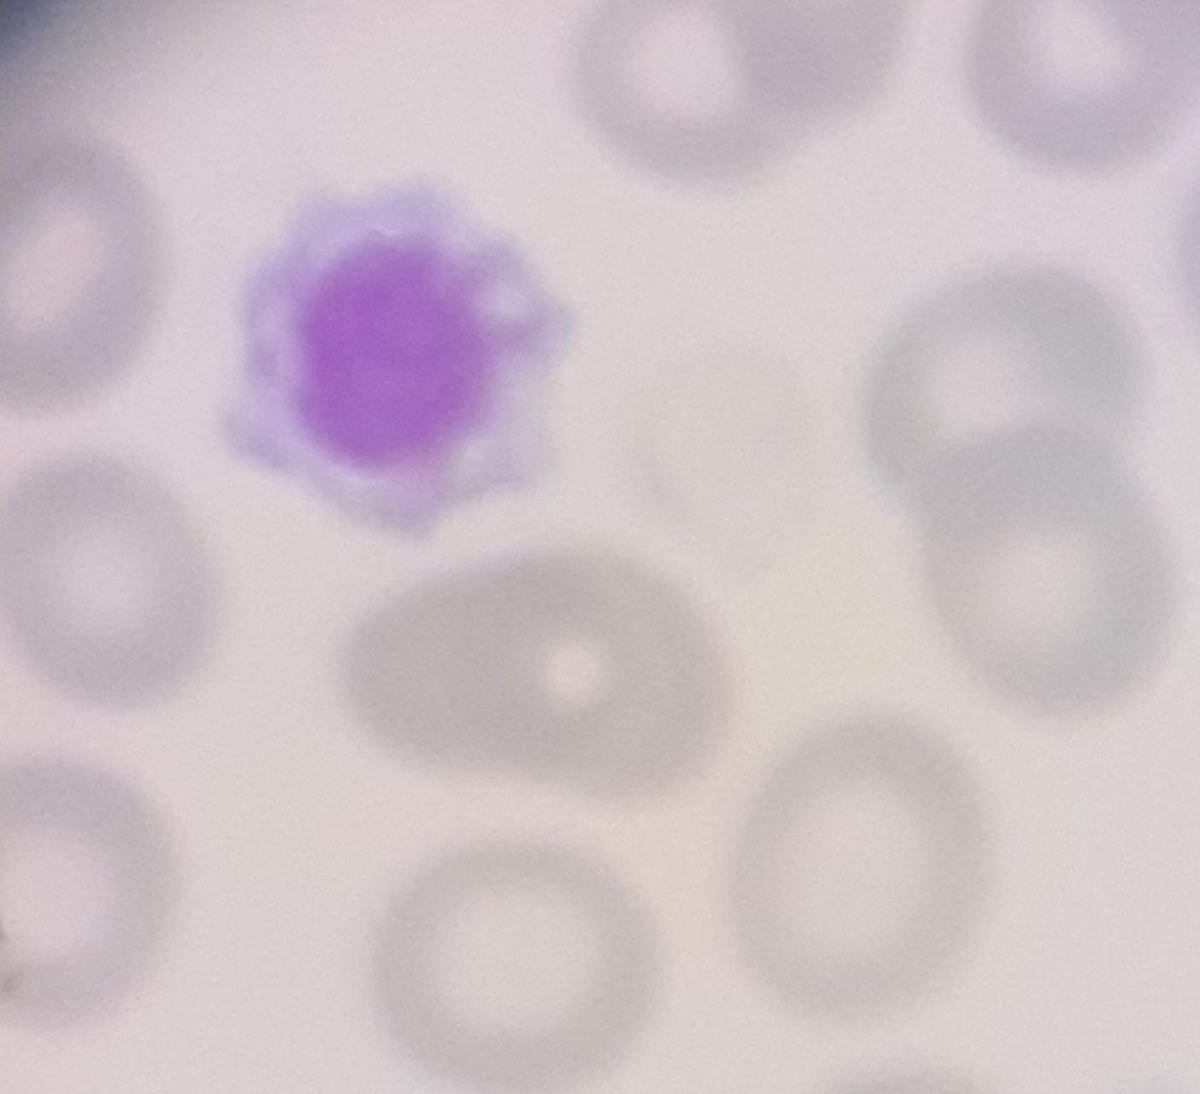 Plaqueta gigante con vacuolización en una Trombocitopenia